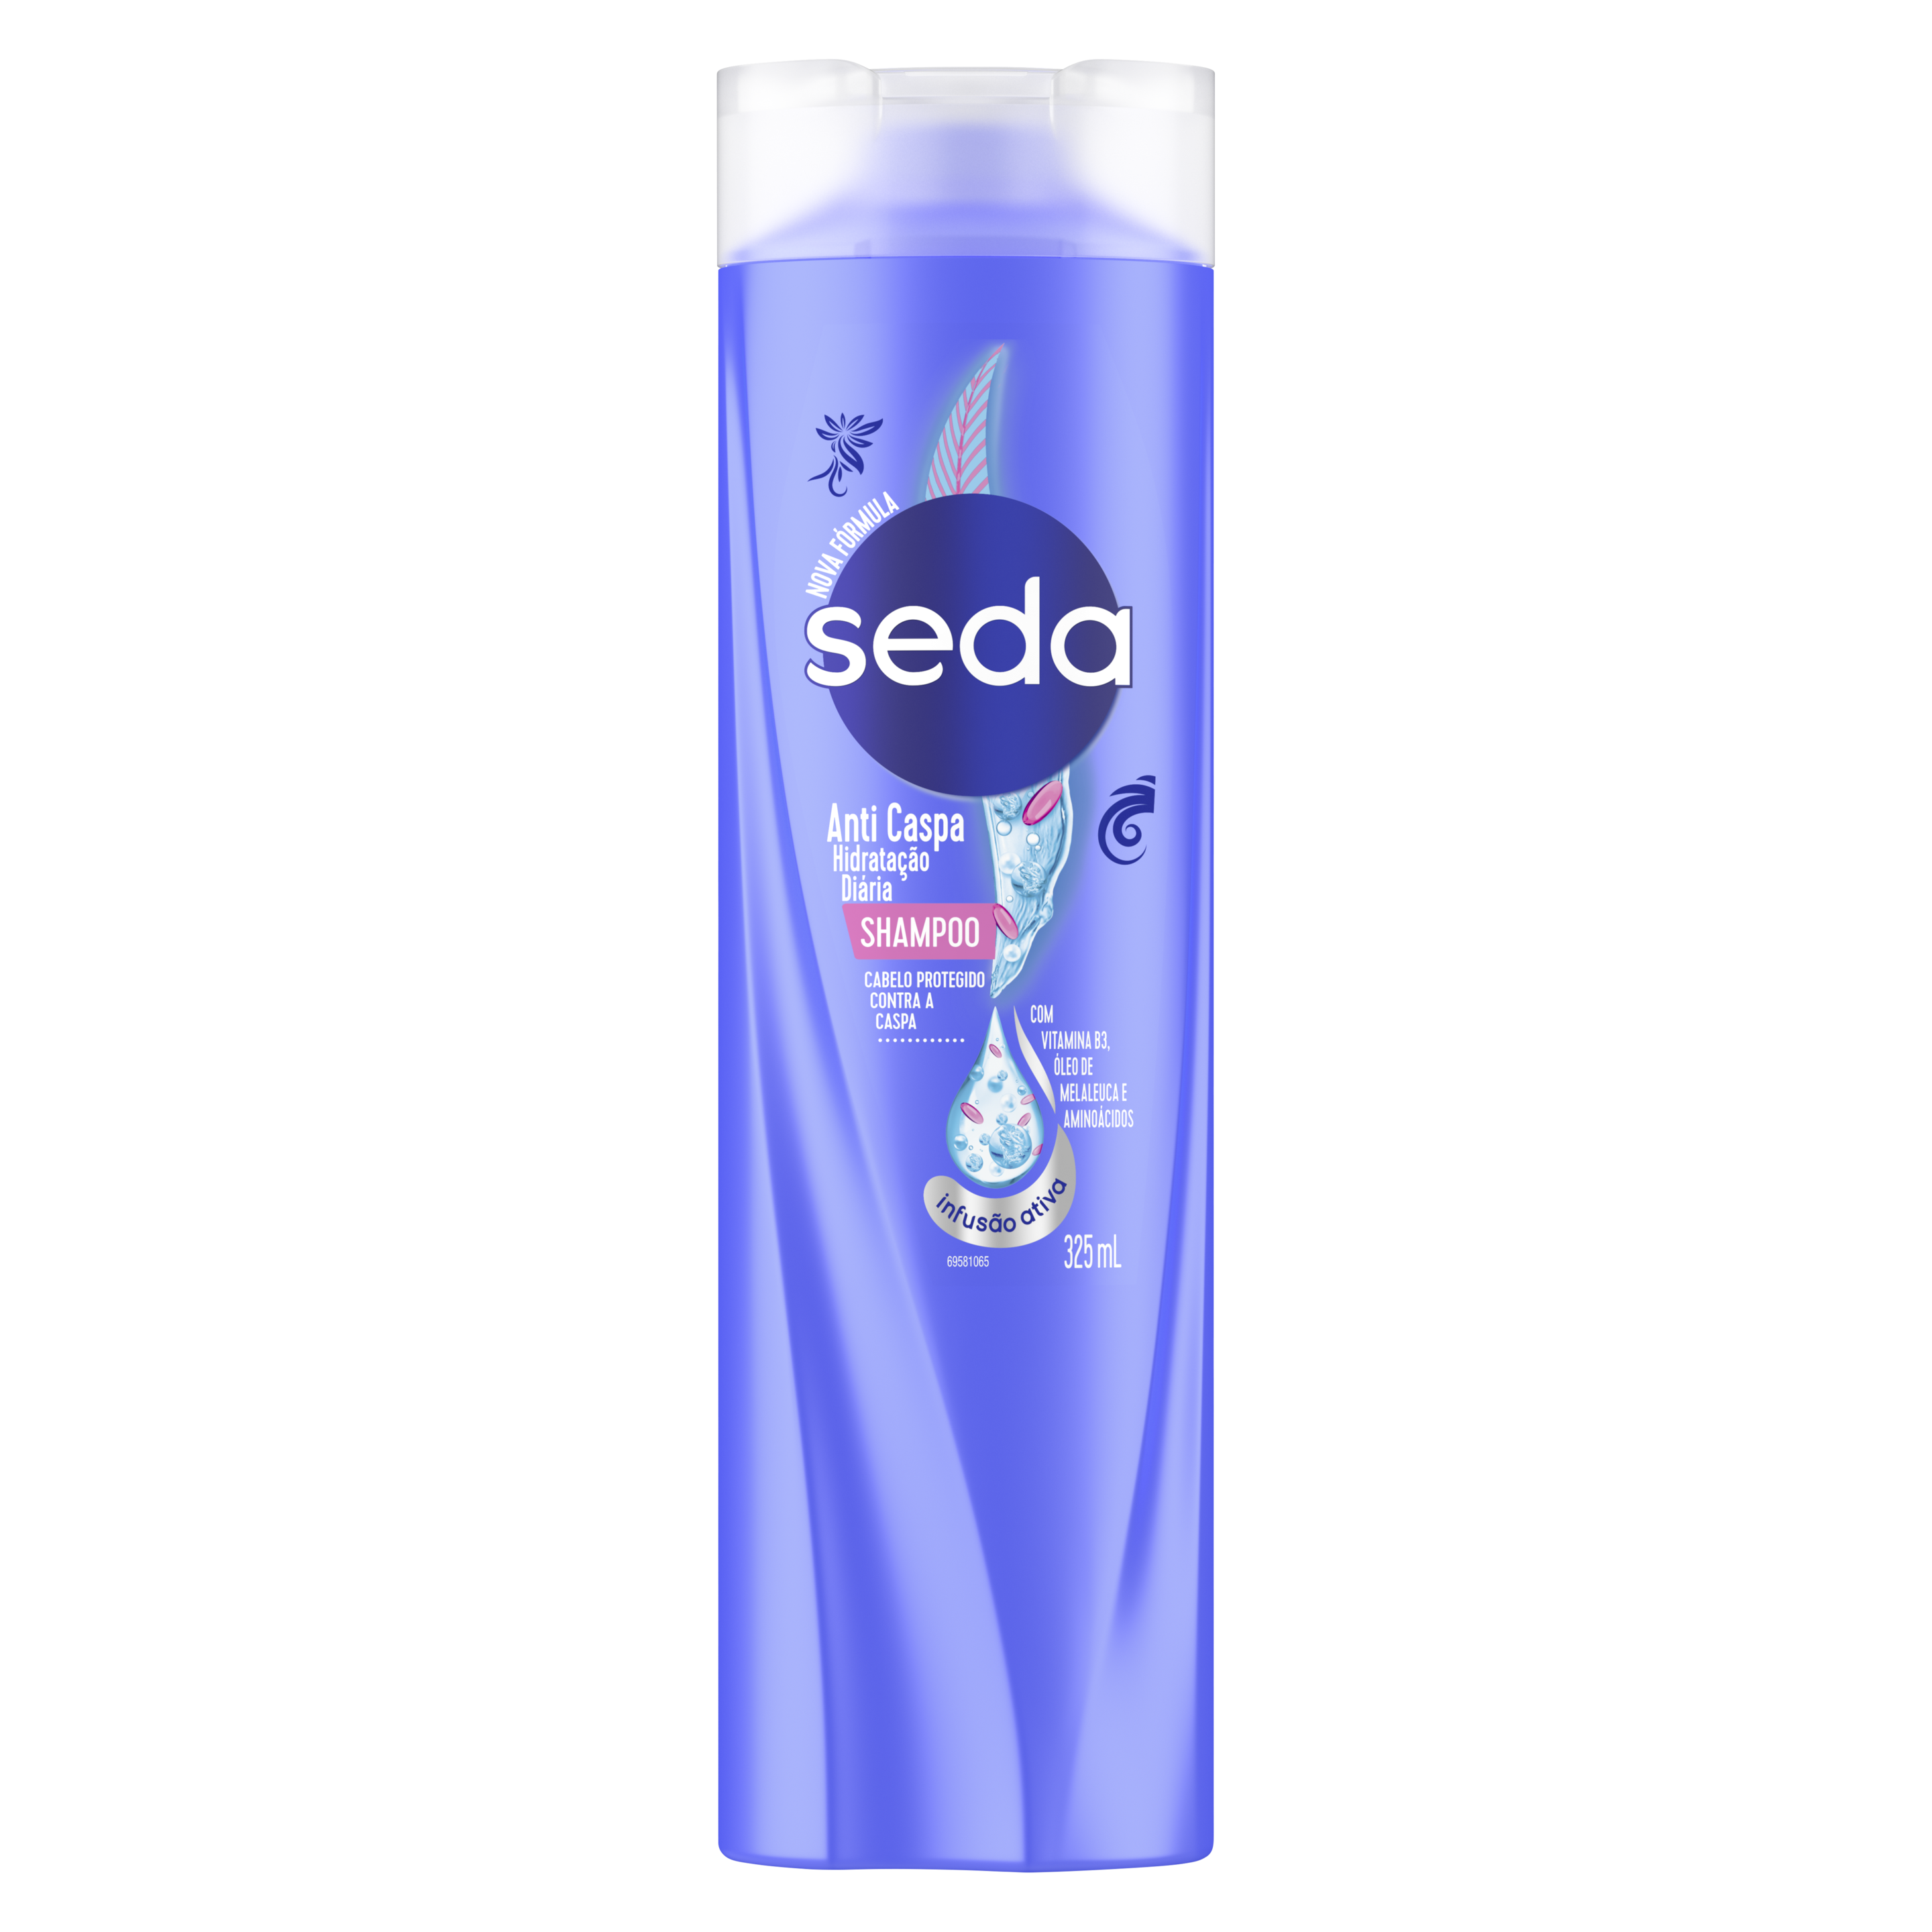 Uma imagem frontal da embalagem de Shampoo Seda Anticaspa 325ml